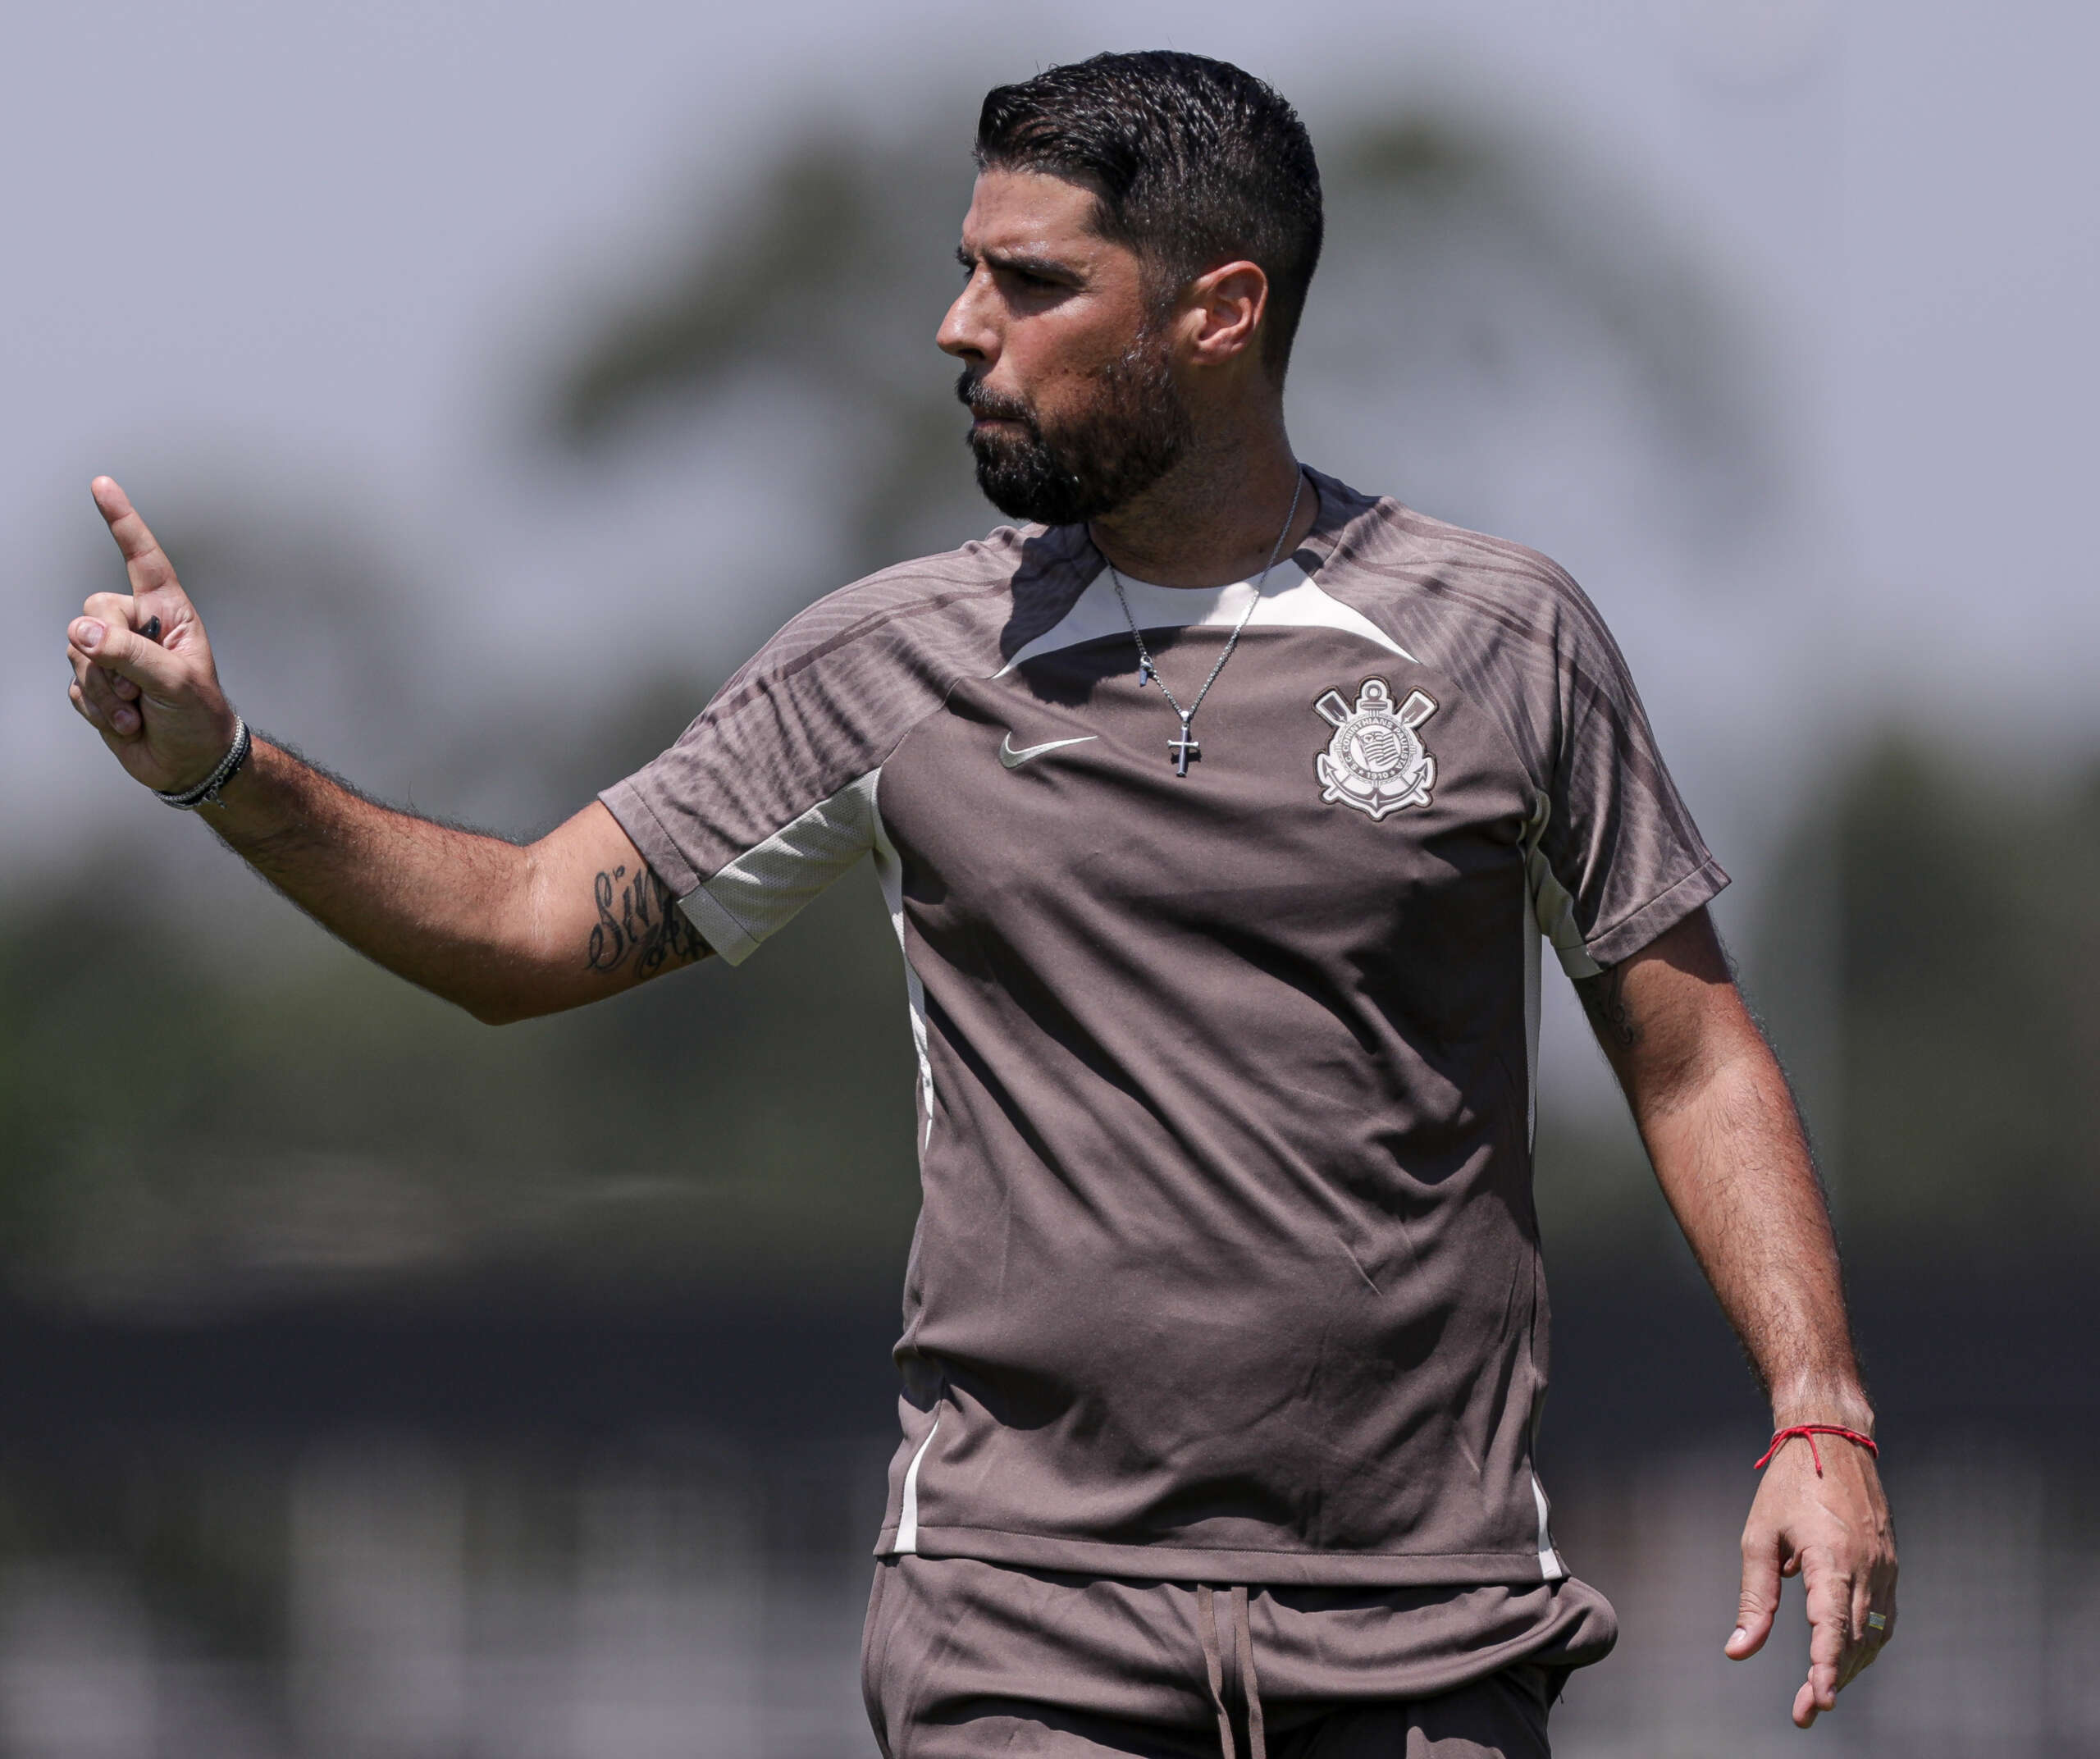 Técnico do Corinthians: ‘Estou muito satisfeito com o rendimento de todos até o momento’